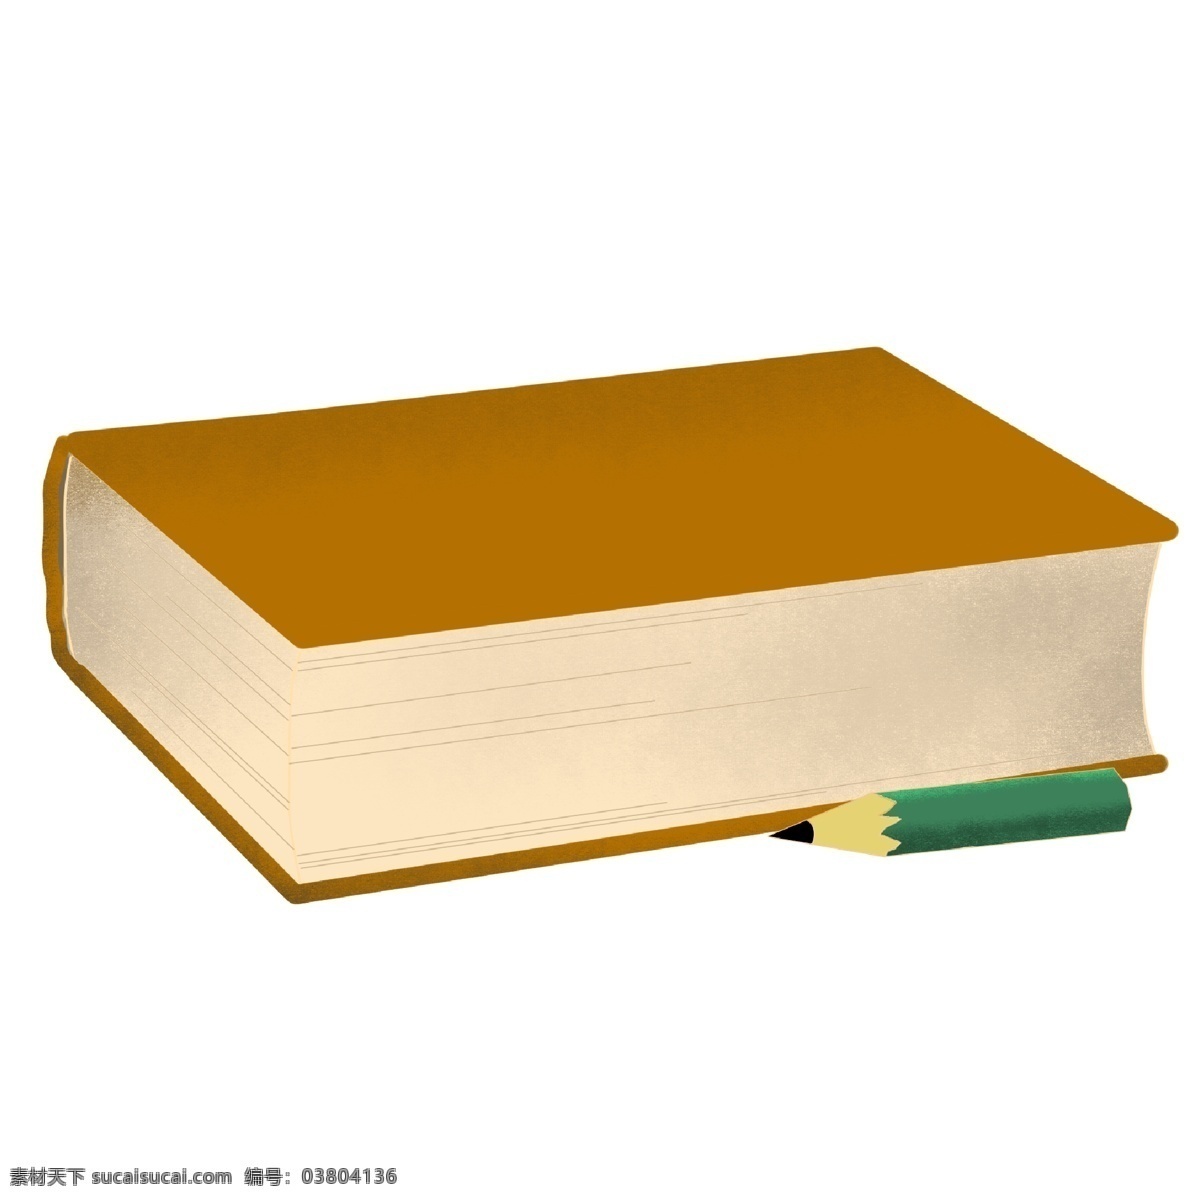 黄色 立体 书本 插图 厚厚的书本 一本书本 黄色外壳 绿色铅笔 学习用品 教学用品 生活用品 卡通书本